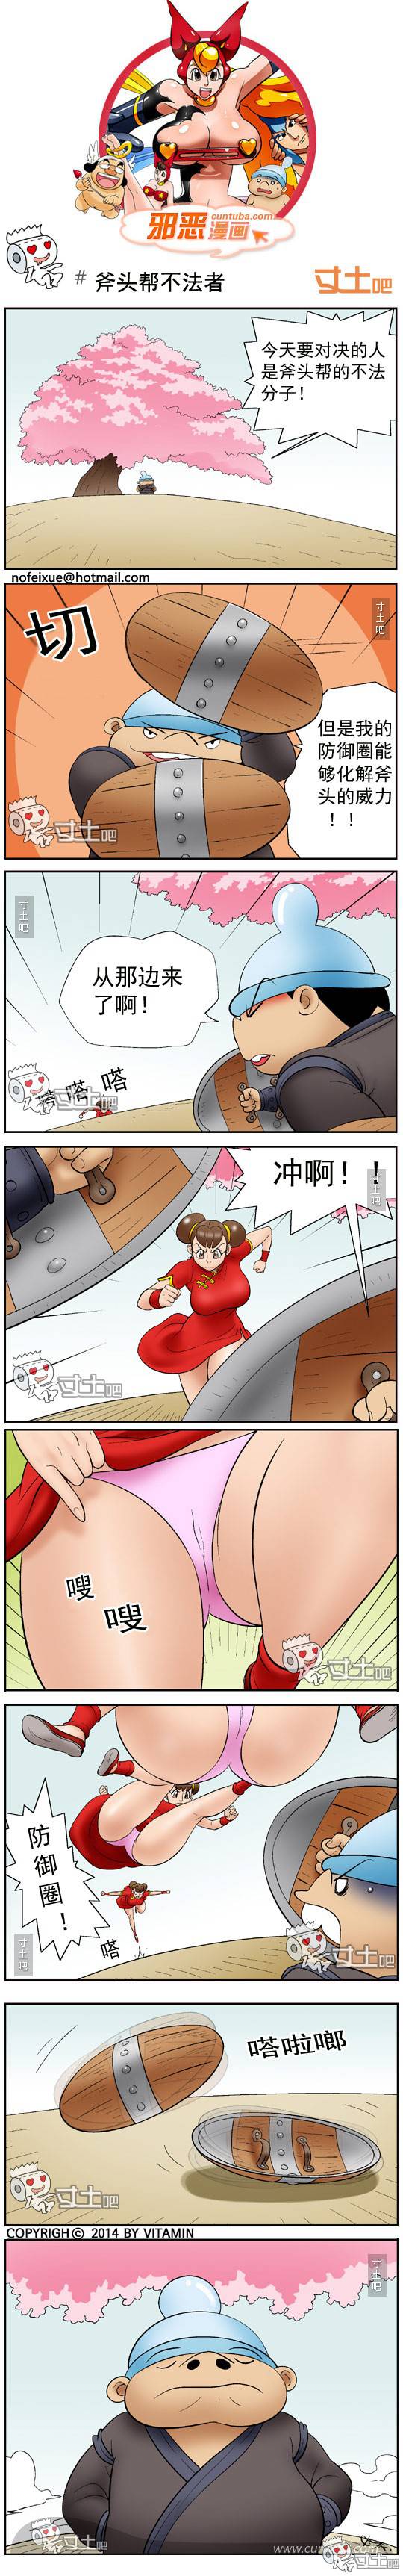 邪恶漫画爆笑囧图第260刊：被偷袭的女人